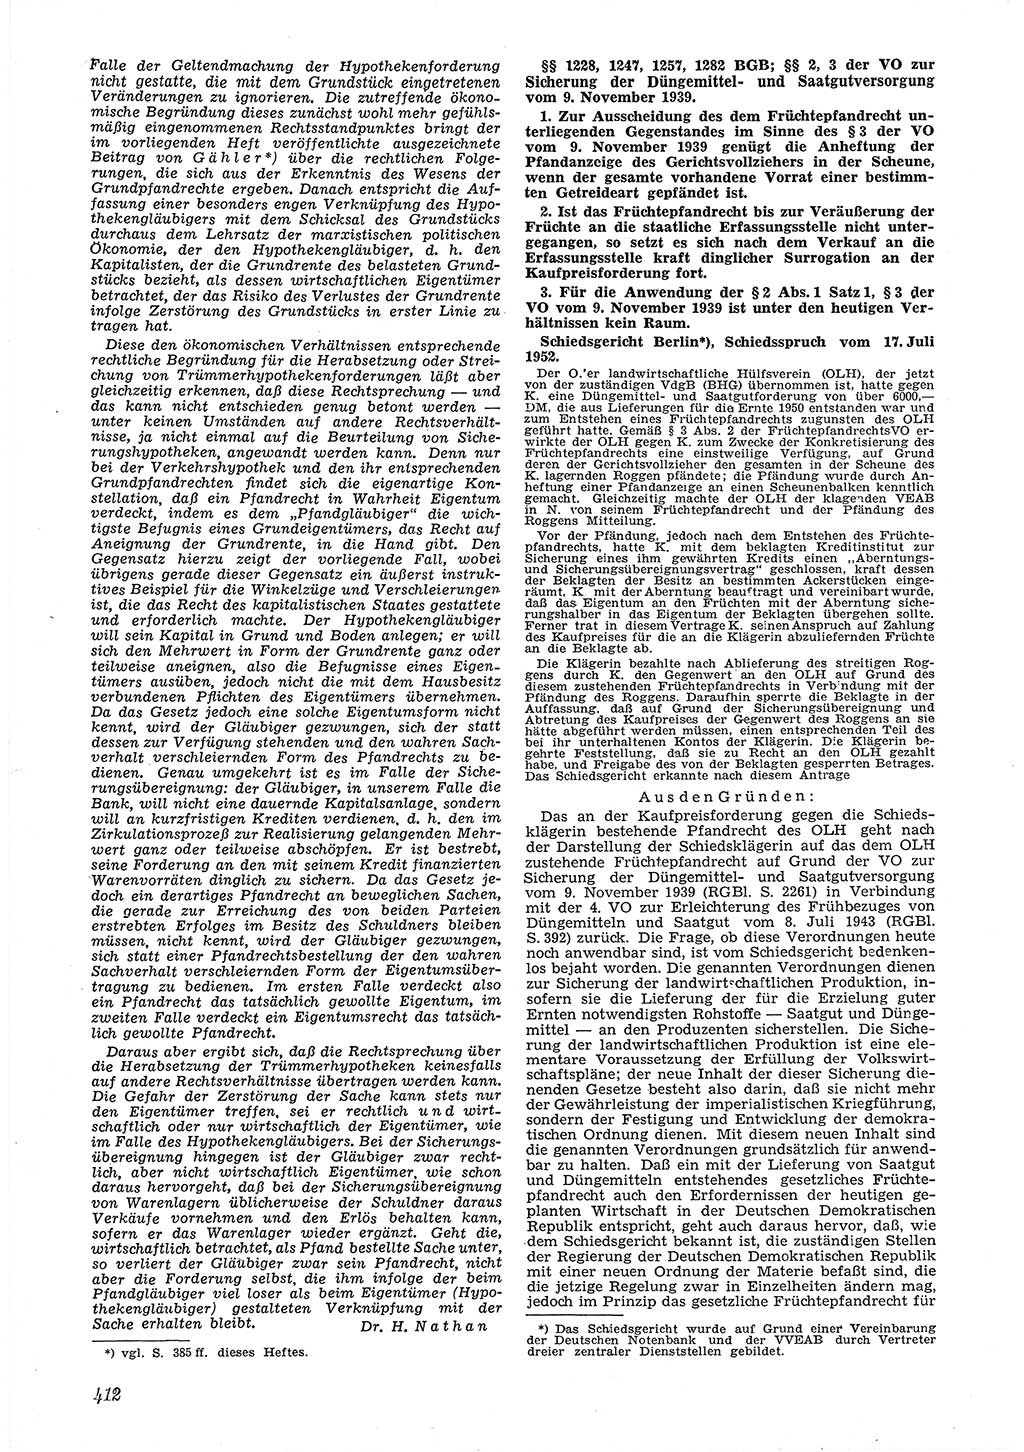 Neue Justiz (NJ), Zeitschrift für Recht und Rechtswissenschaft [Deutsche Demokratische Republik (DDR)], 6. Jahrgang 1952, Seite 412 (NJ DDR 1952, S. 412)